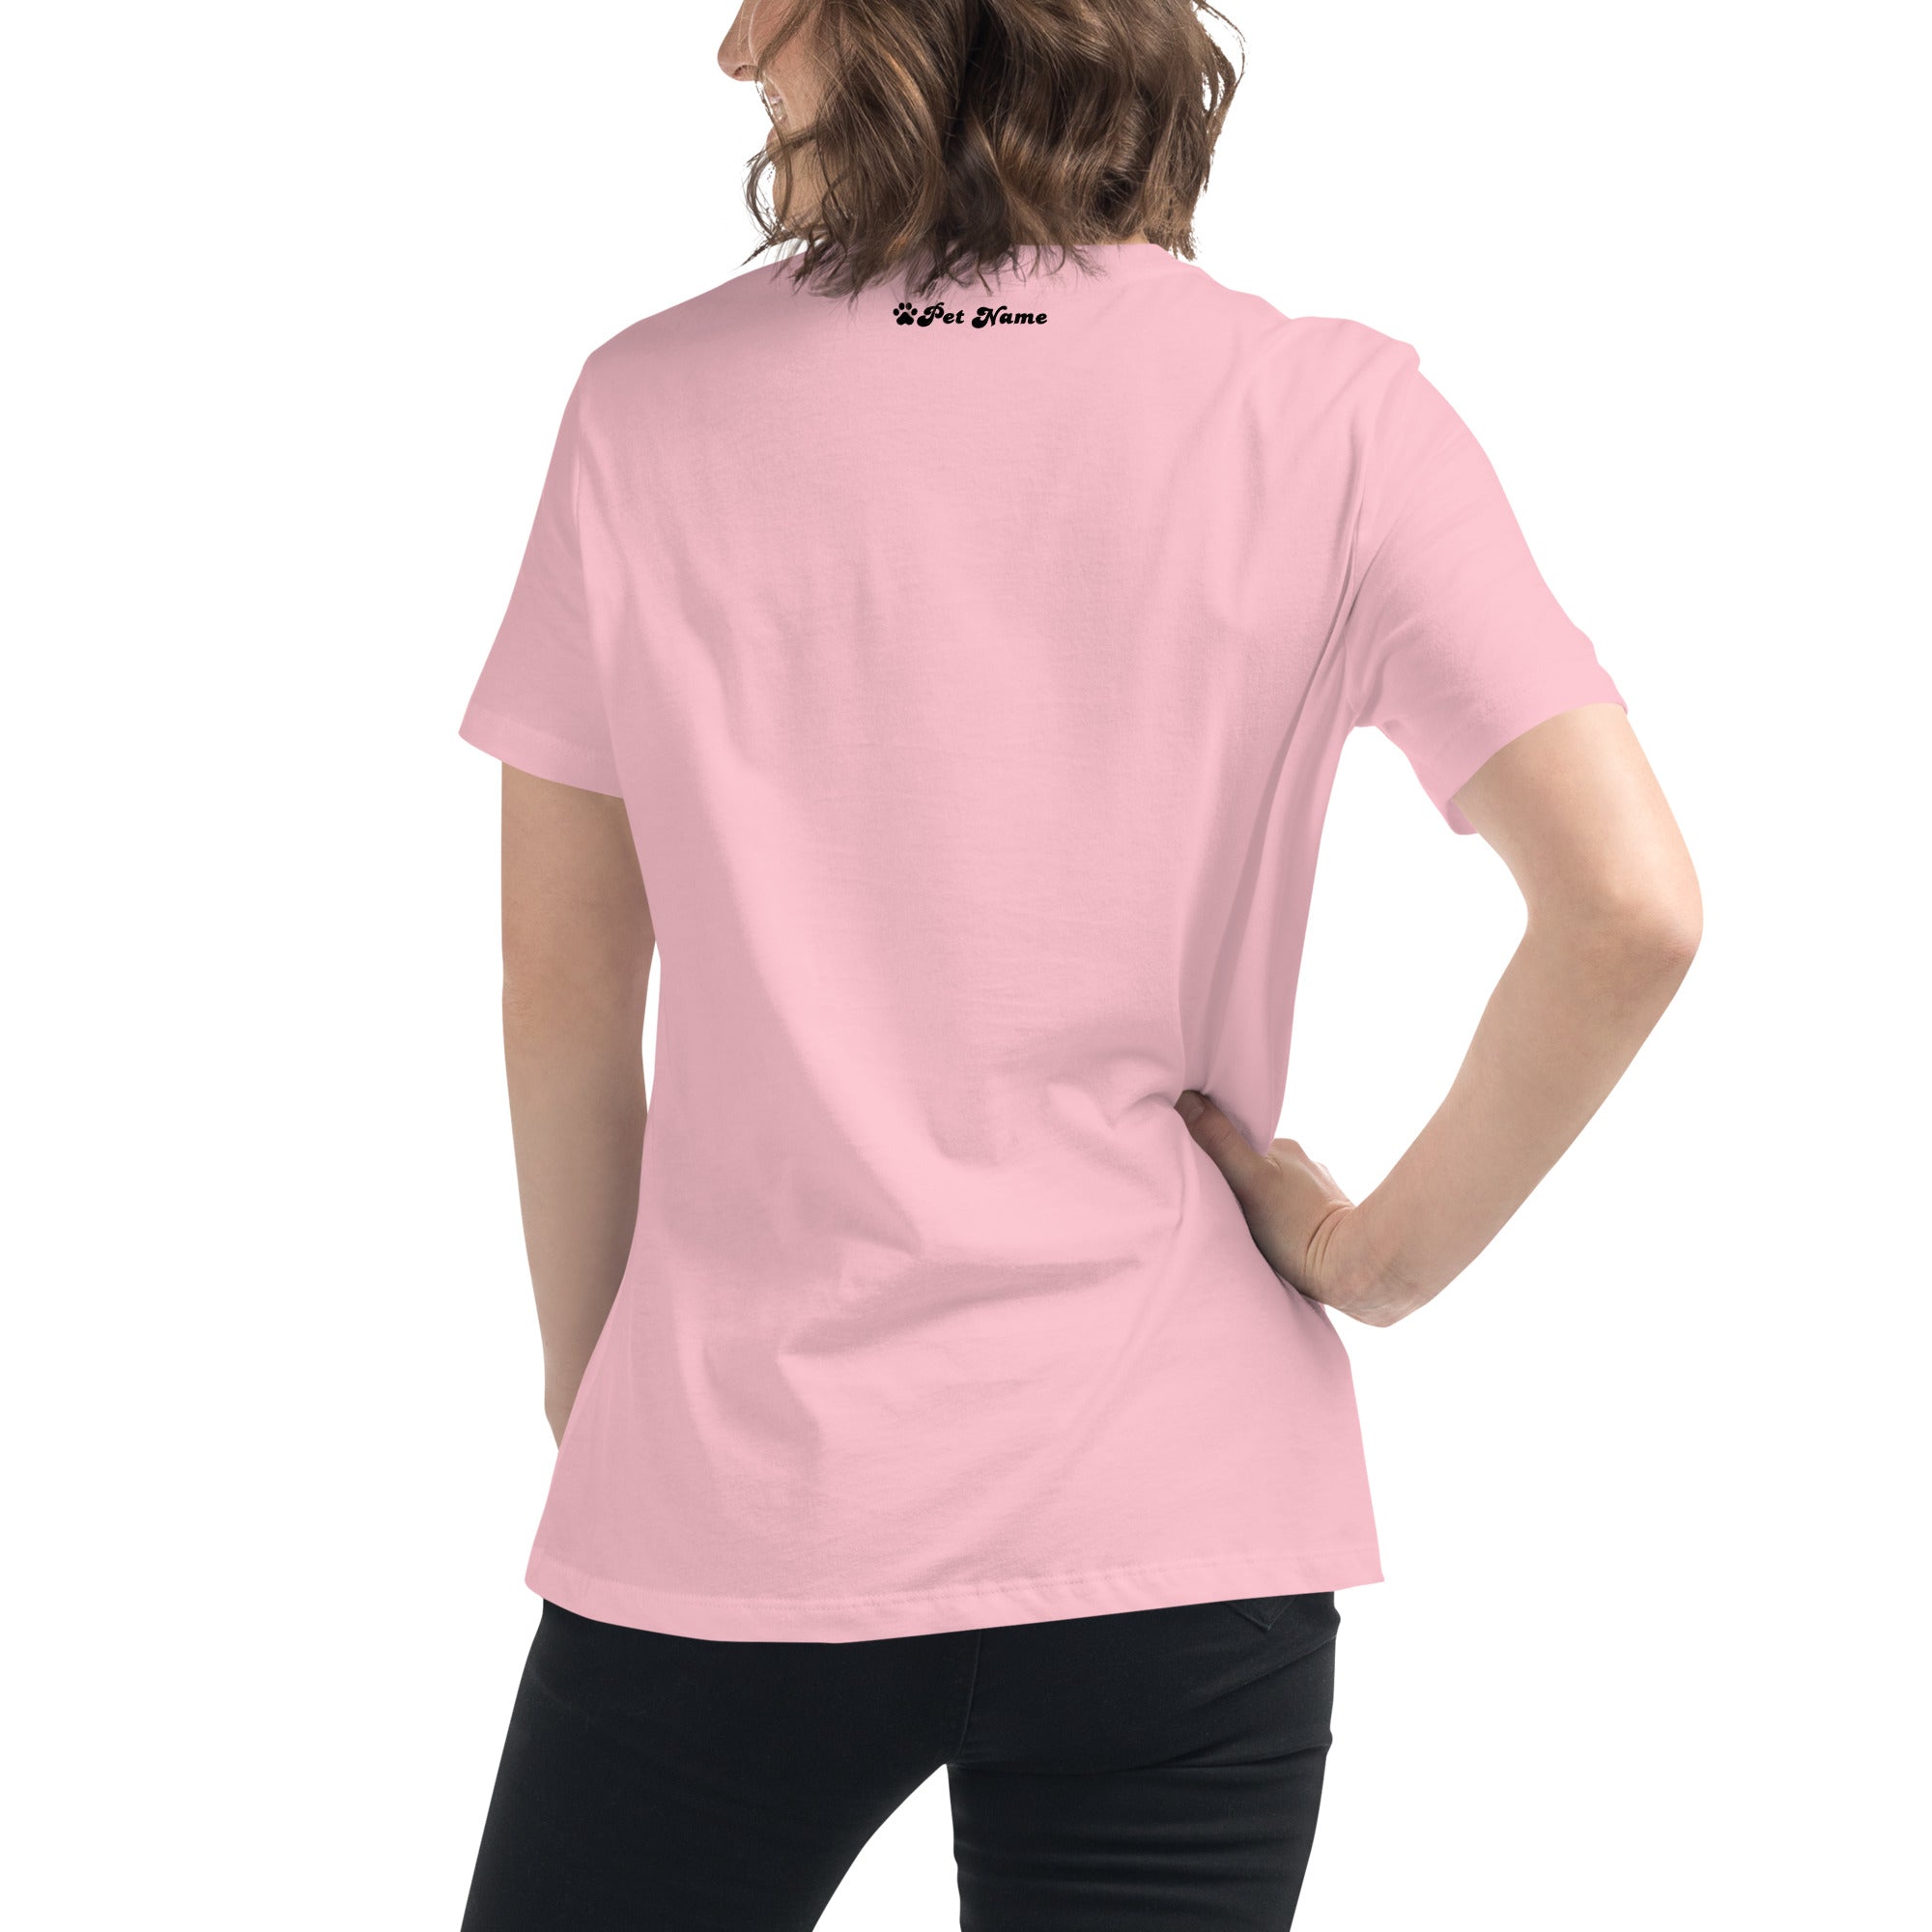 Schnauzer Women's Relaxed T-Shirt